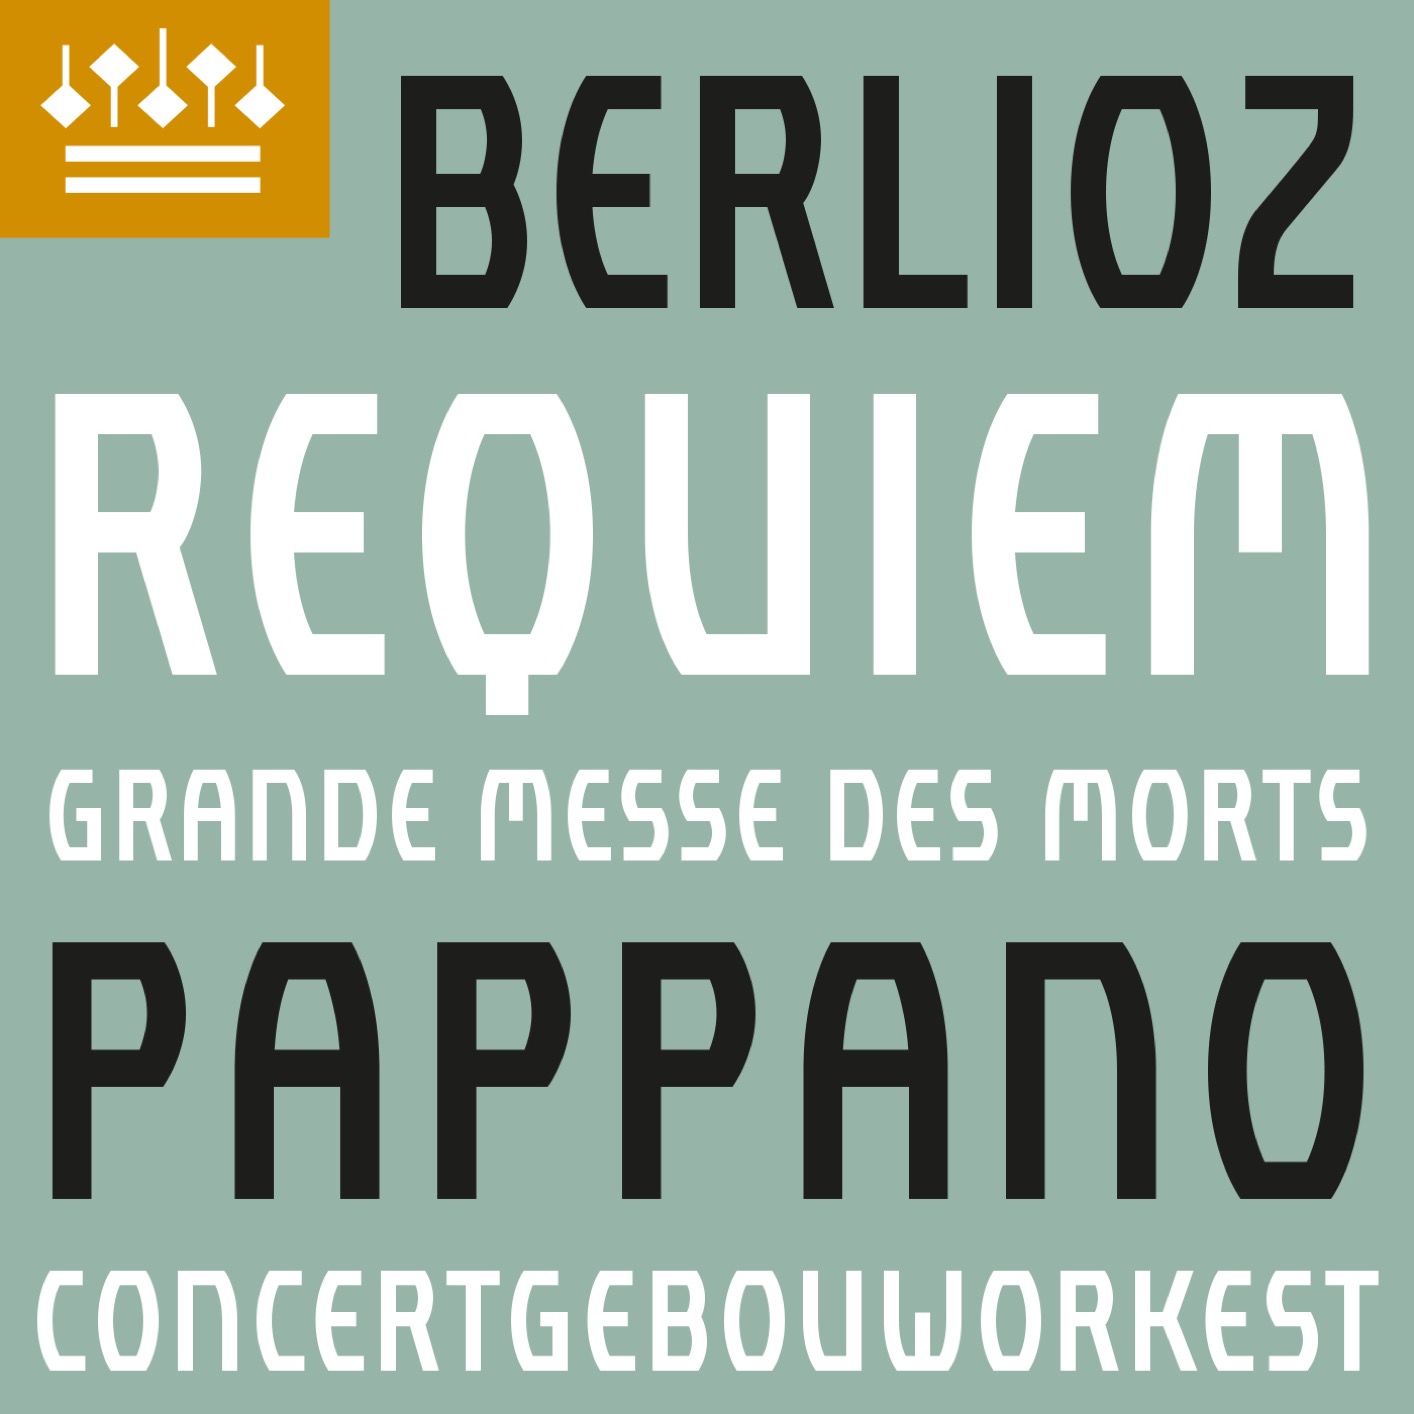 Concertgebouworkest, Antonio Pappano & Javier Camarena - Berlioz: Requiem, Op. 5 (2021) [FLAC 24bit/192kHz]